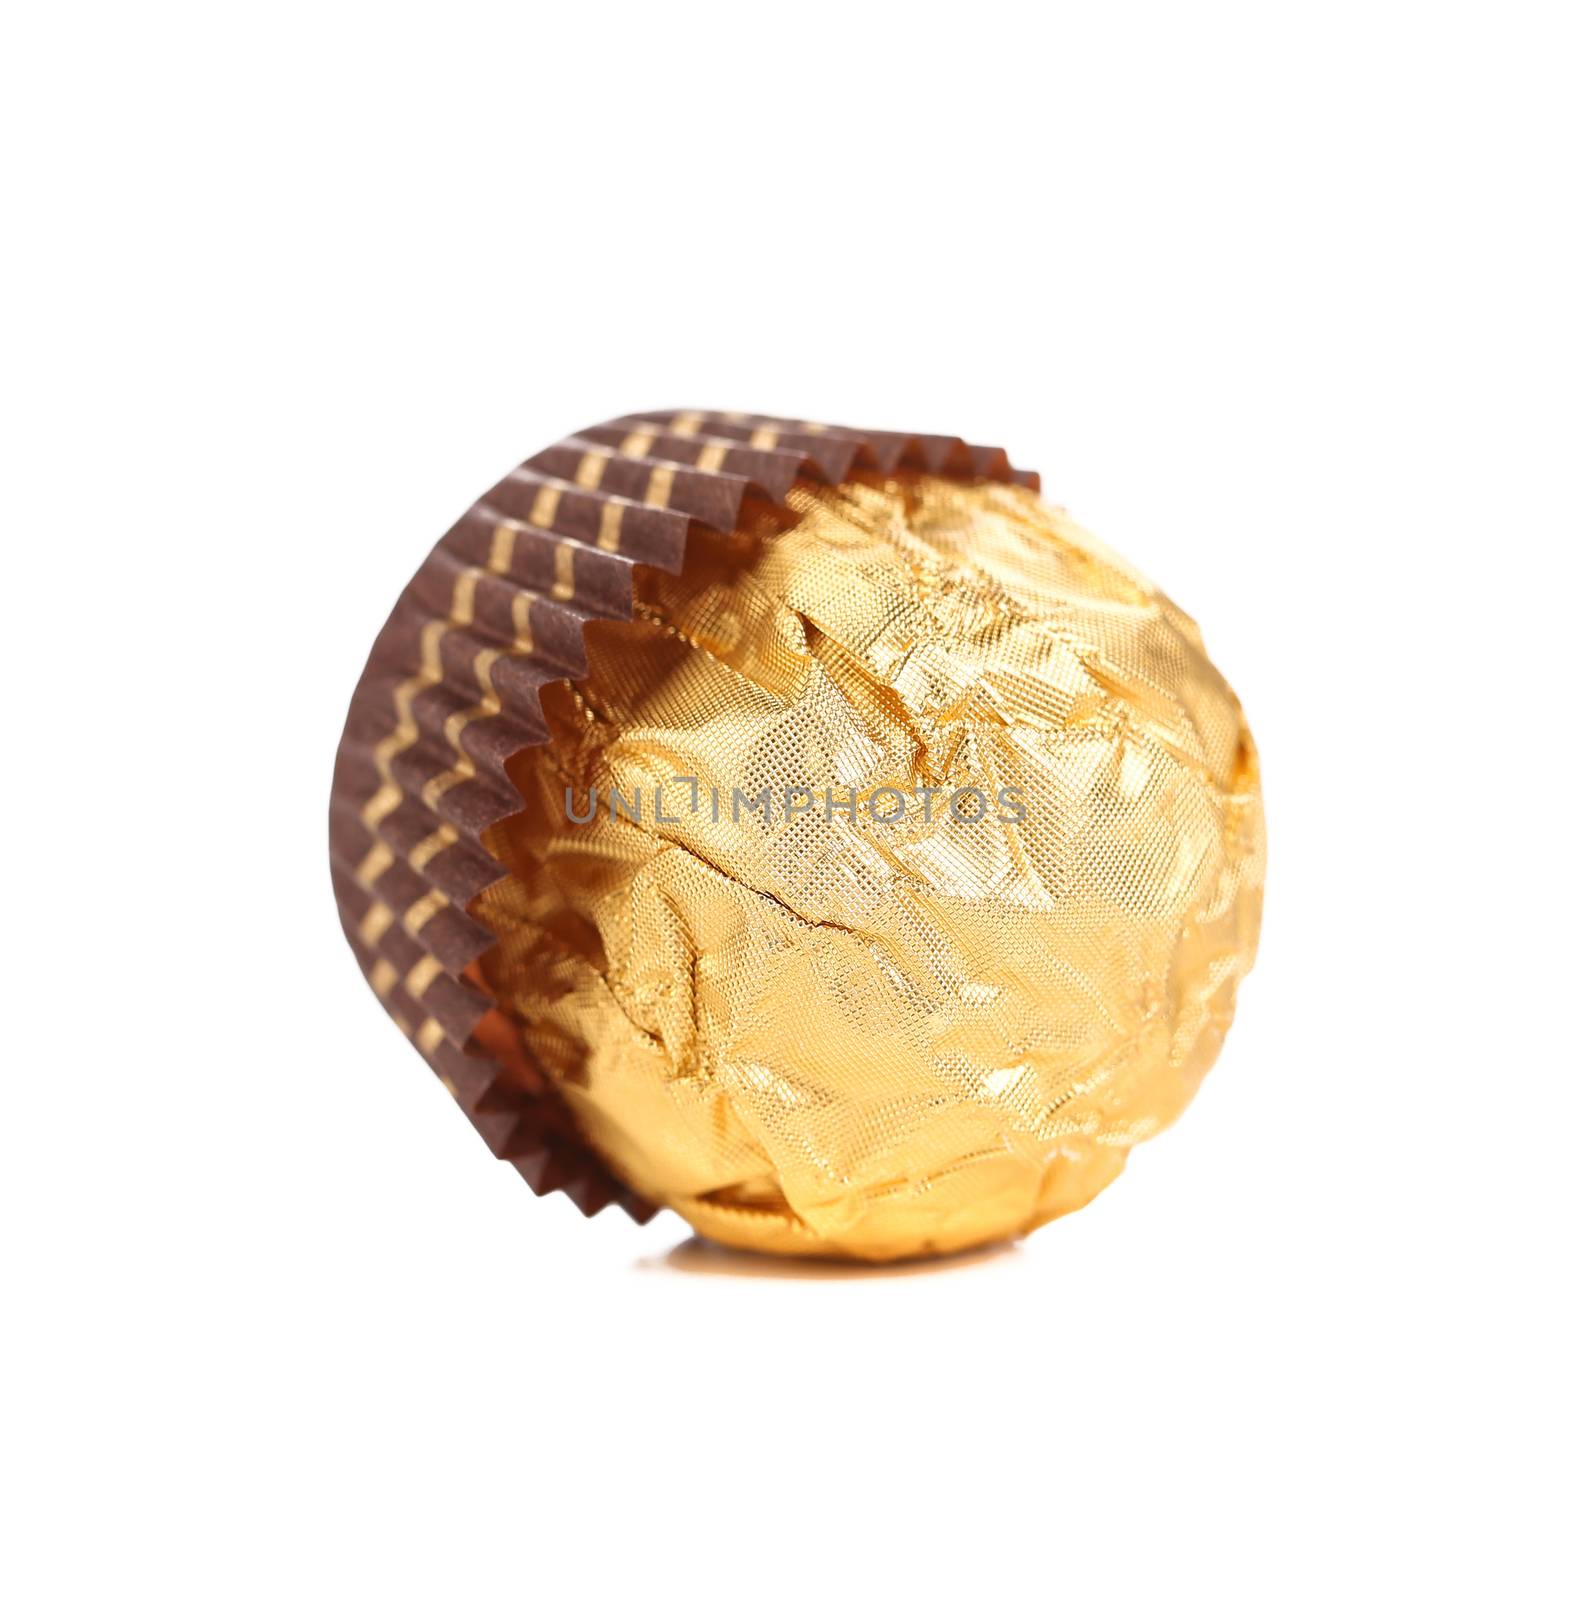 Delicious gold foiled bonbon. by indigolotos